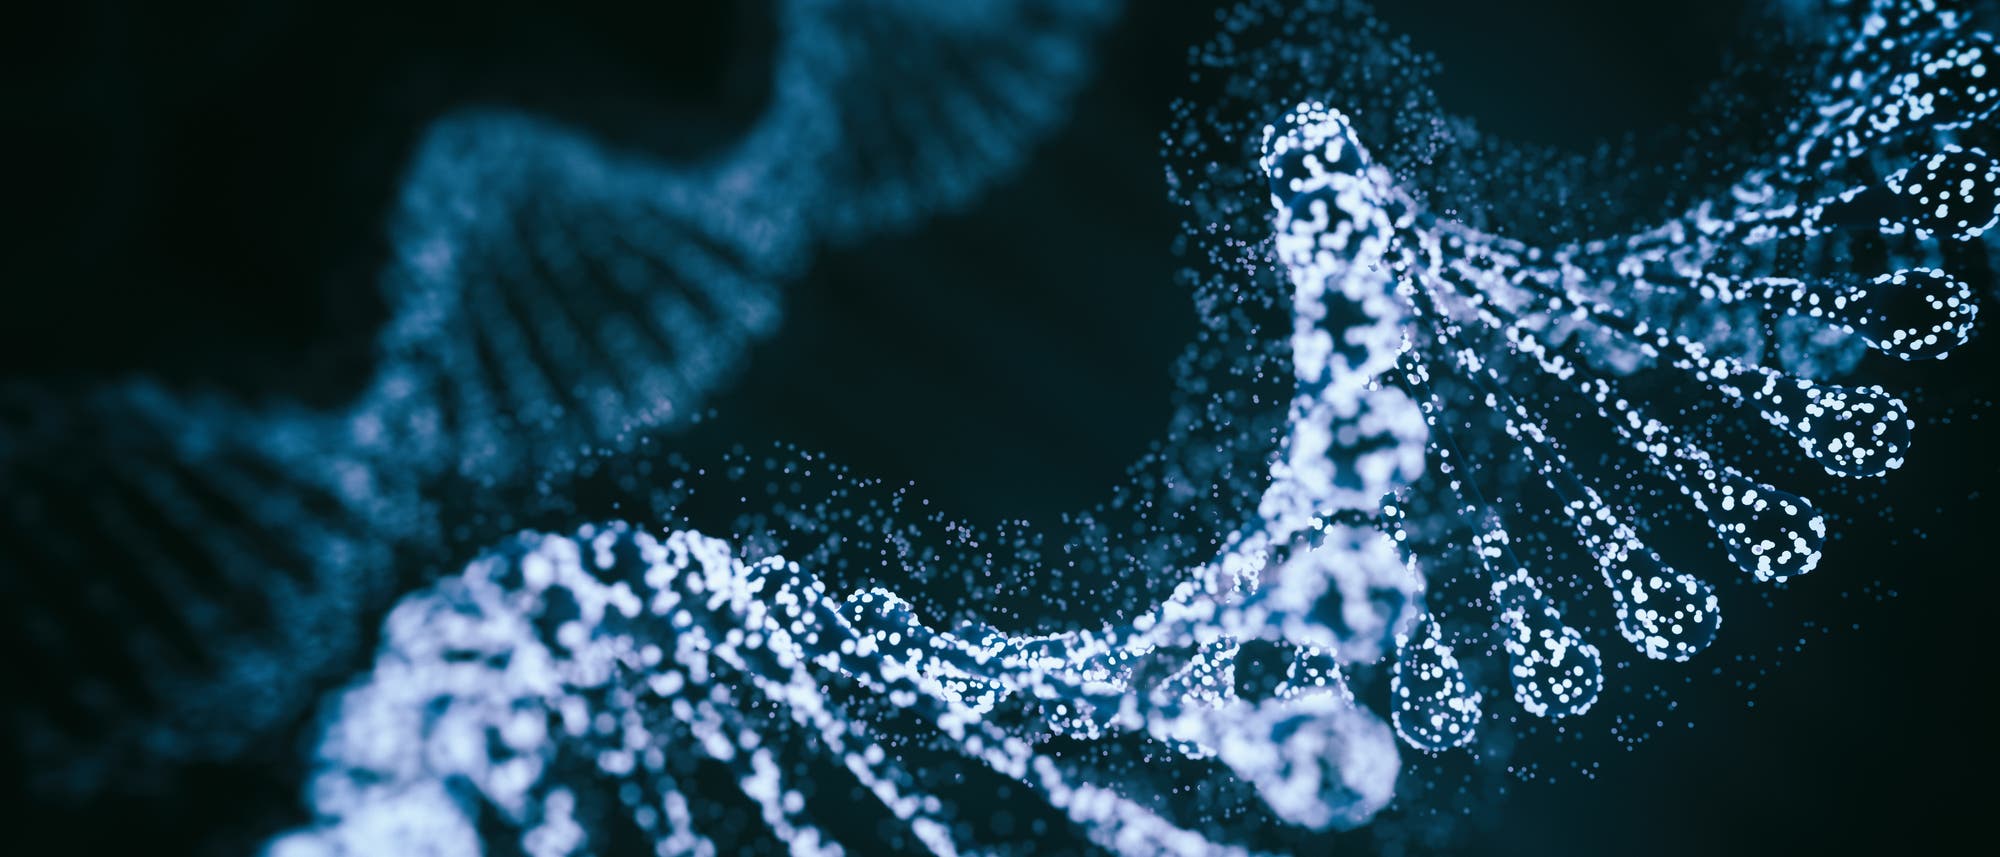 Blauer DNA-Doppelstrang vor schwarzem Hintergrund